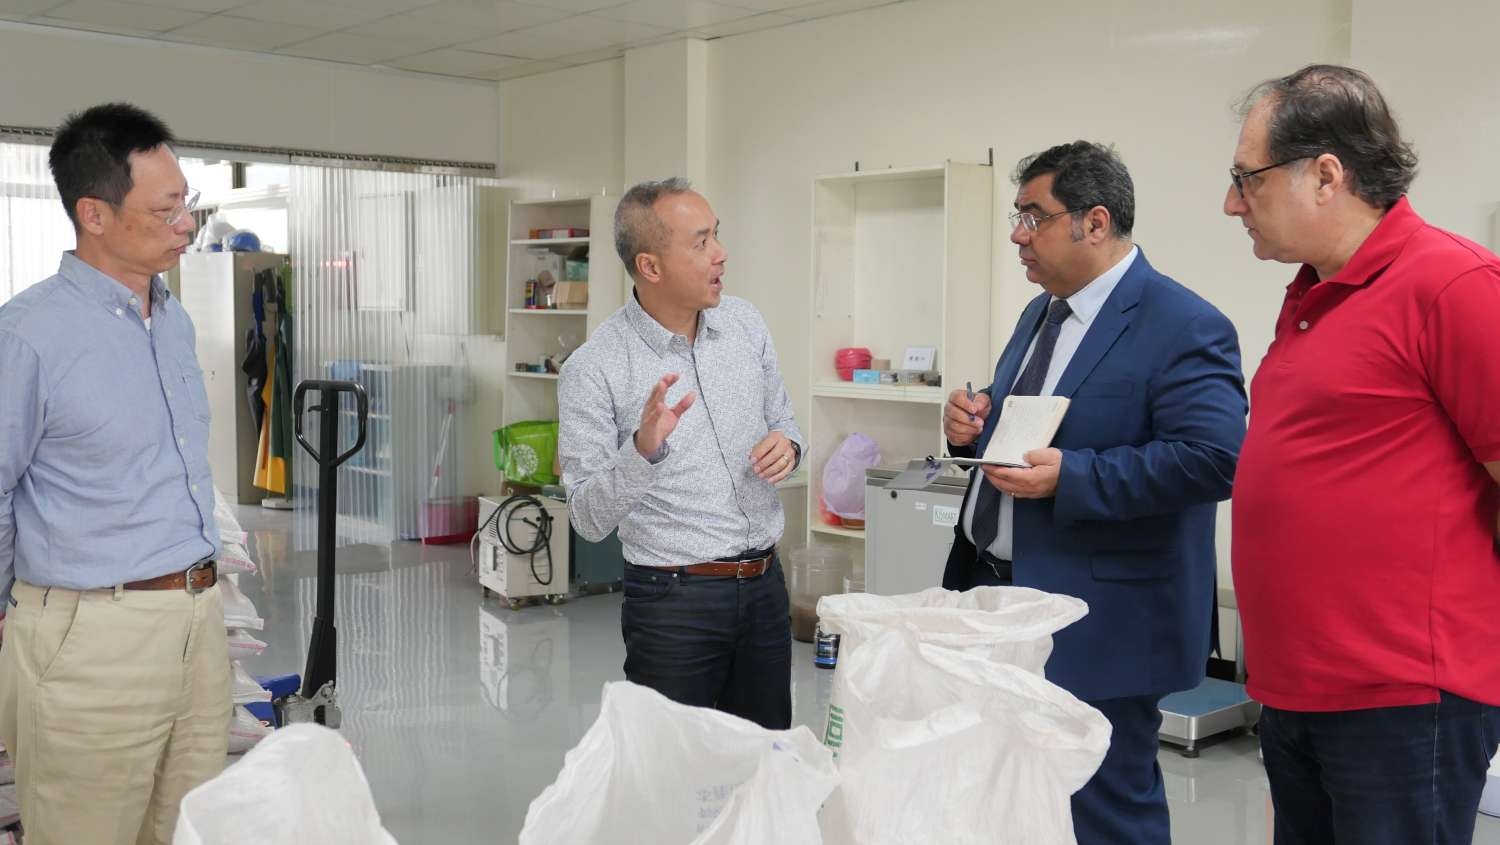 國內首座科技化廚餘處理廠在新竹市 土耳其科技顧問團率先參訪取經堆肥新科技大圖